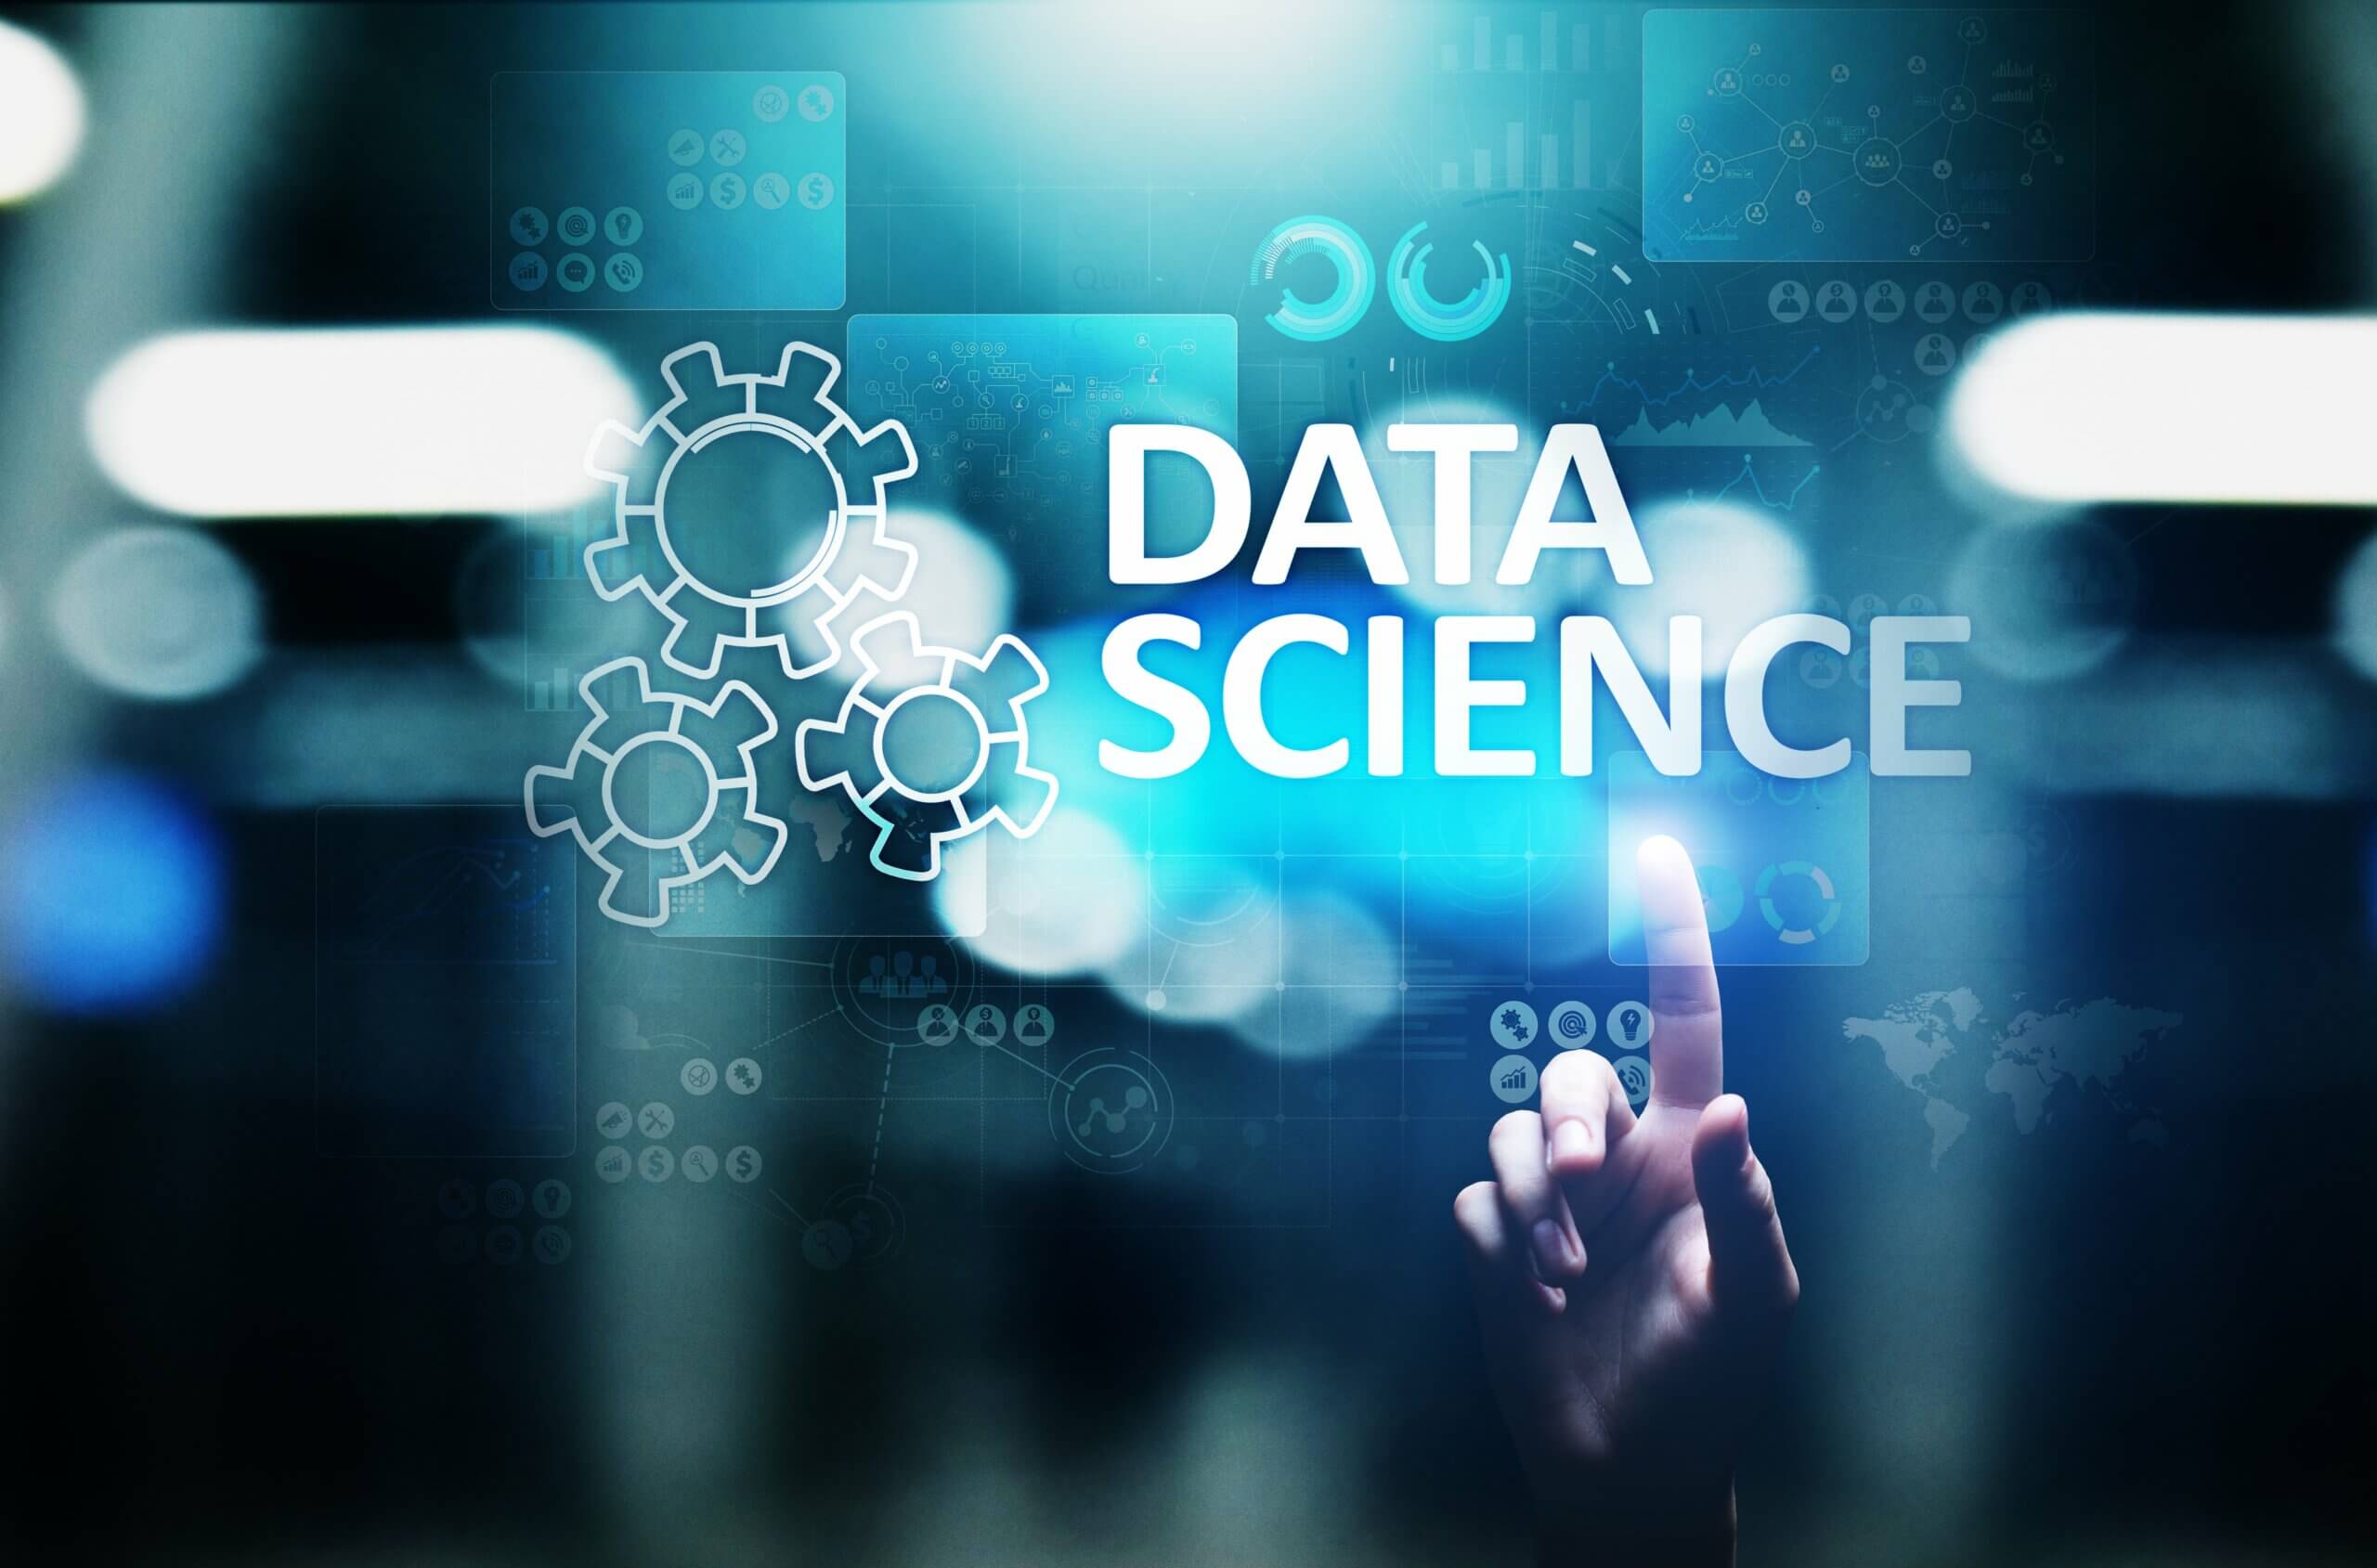 Imagem com “Data Science” em destaque em um fundo azul com elementos que remetem a dados, como engrenagens e gráficos. Apontando para o título, está uma mão de uma pessoa branca.